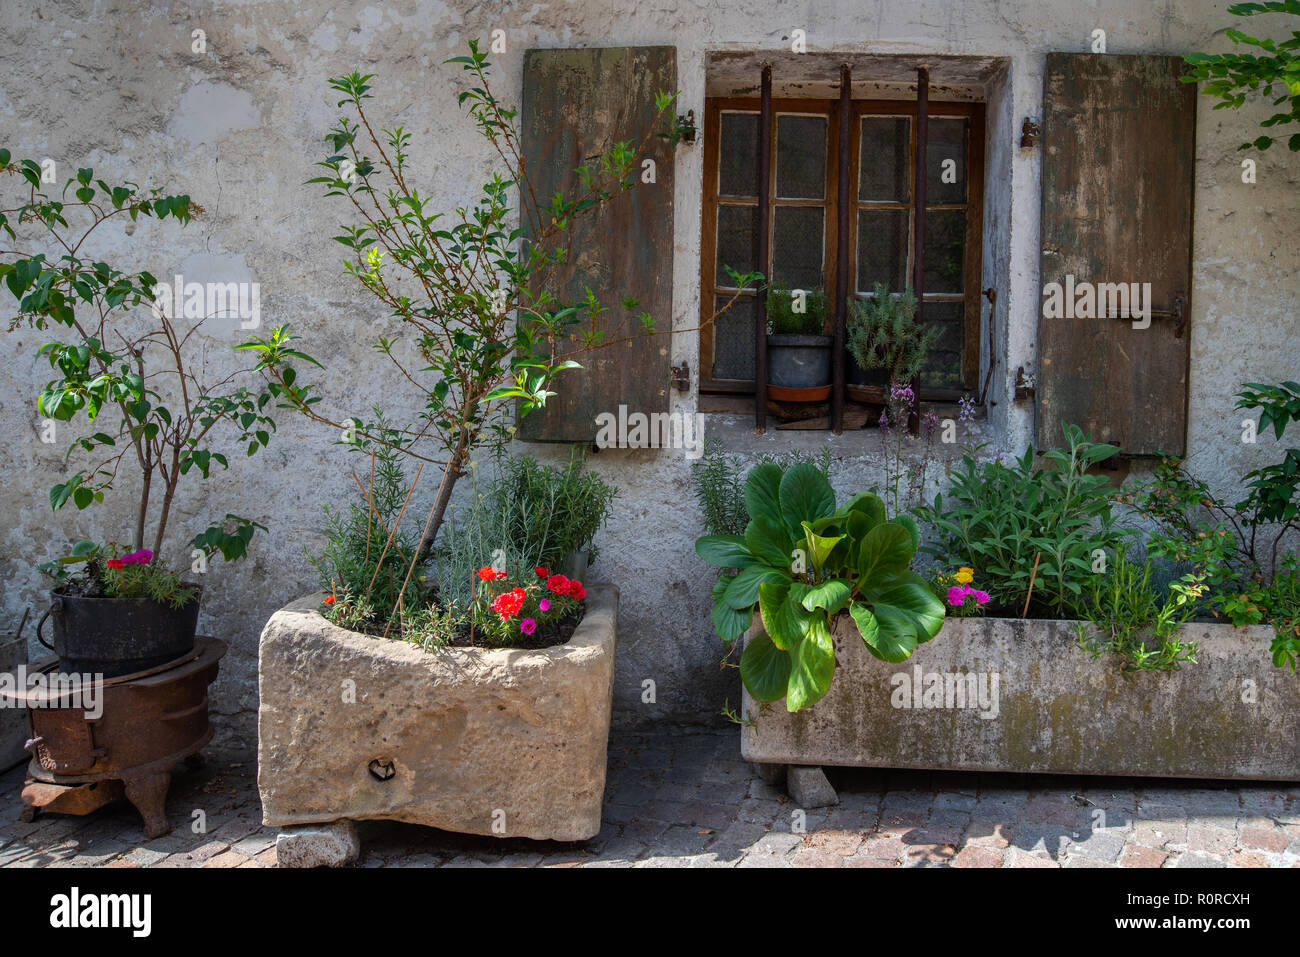 Devant une maison décorée de jardinières en pierre et de suspendre des seaux en fer faisant une très belle rue face à Annecy, France Banque D'Images